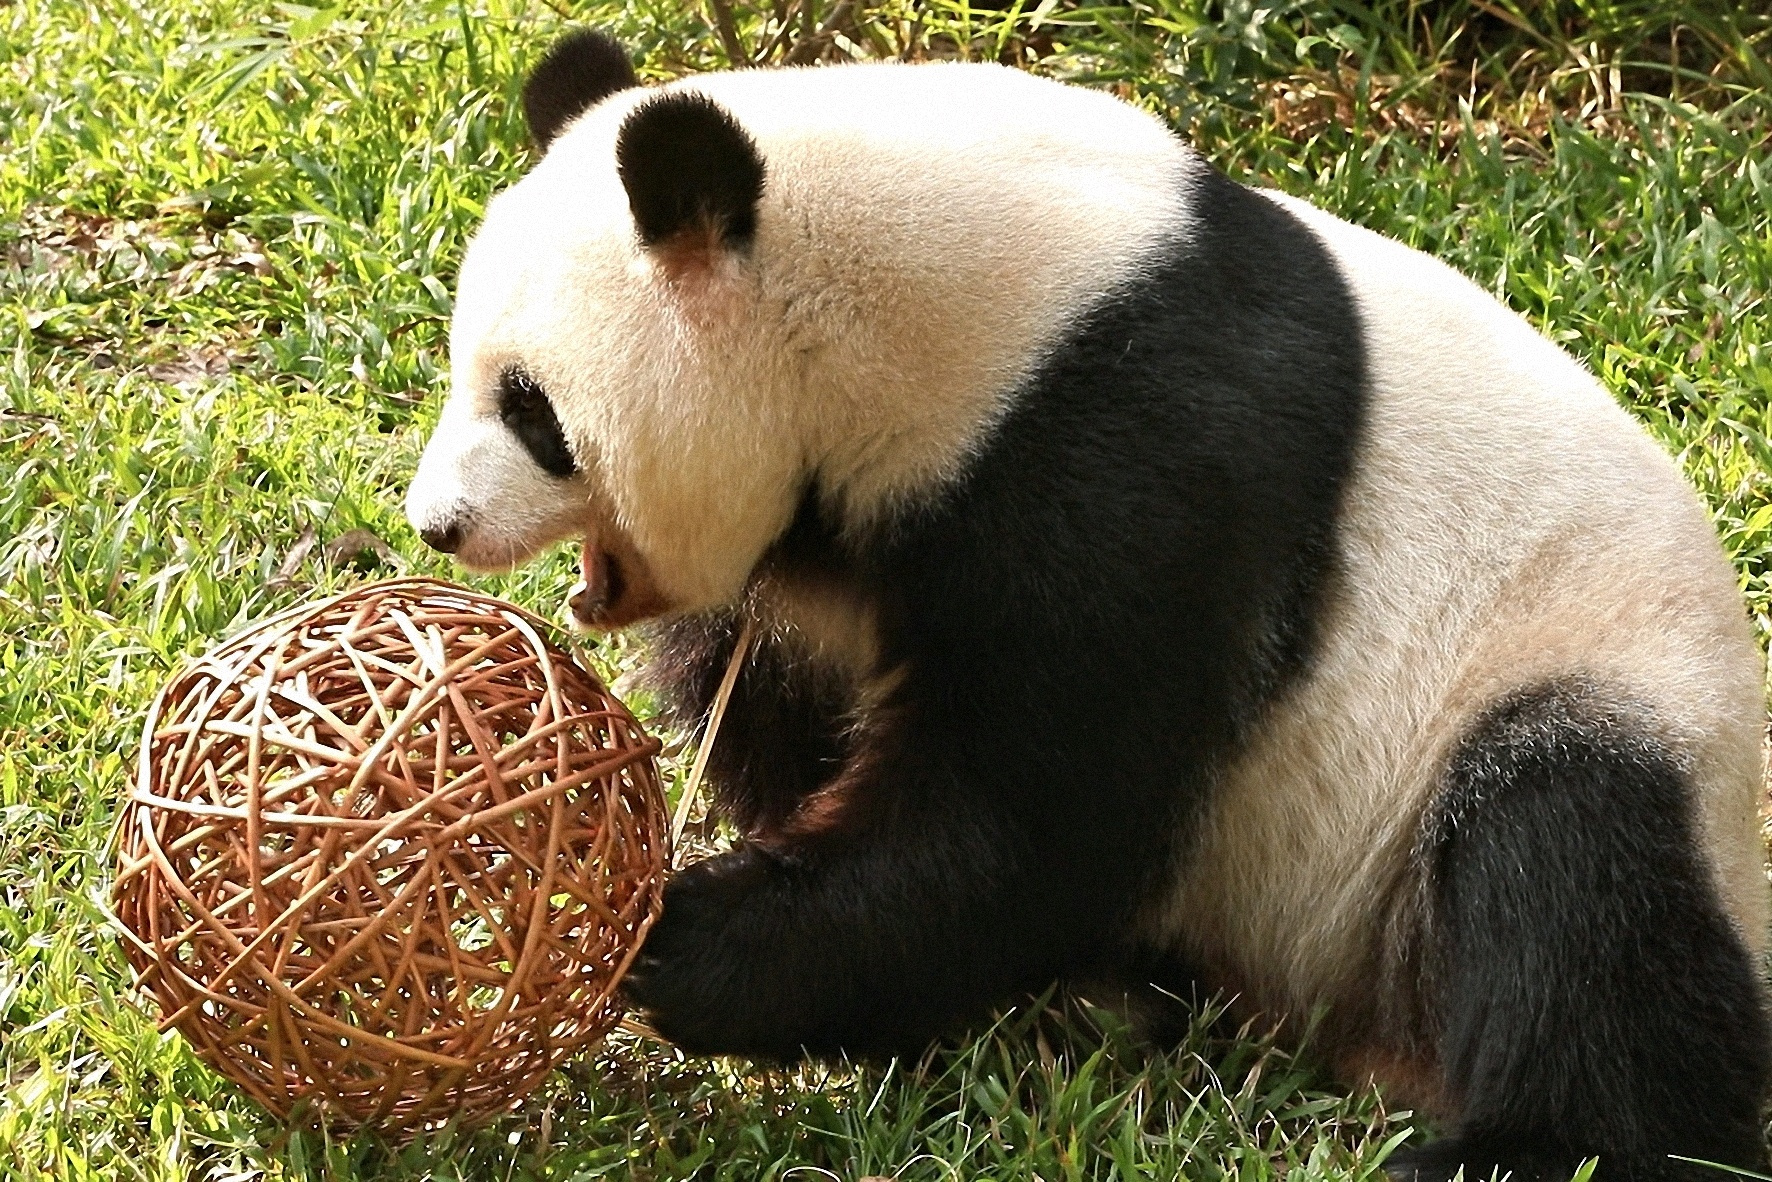 熊猫雅一玩藤球南方+仇敏业拍摄卡塔尔世界杯